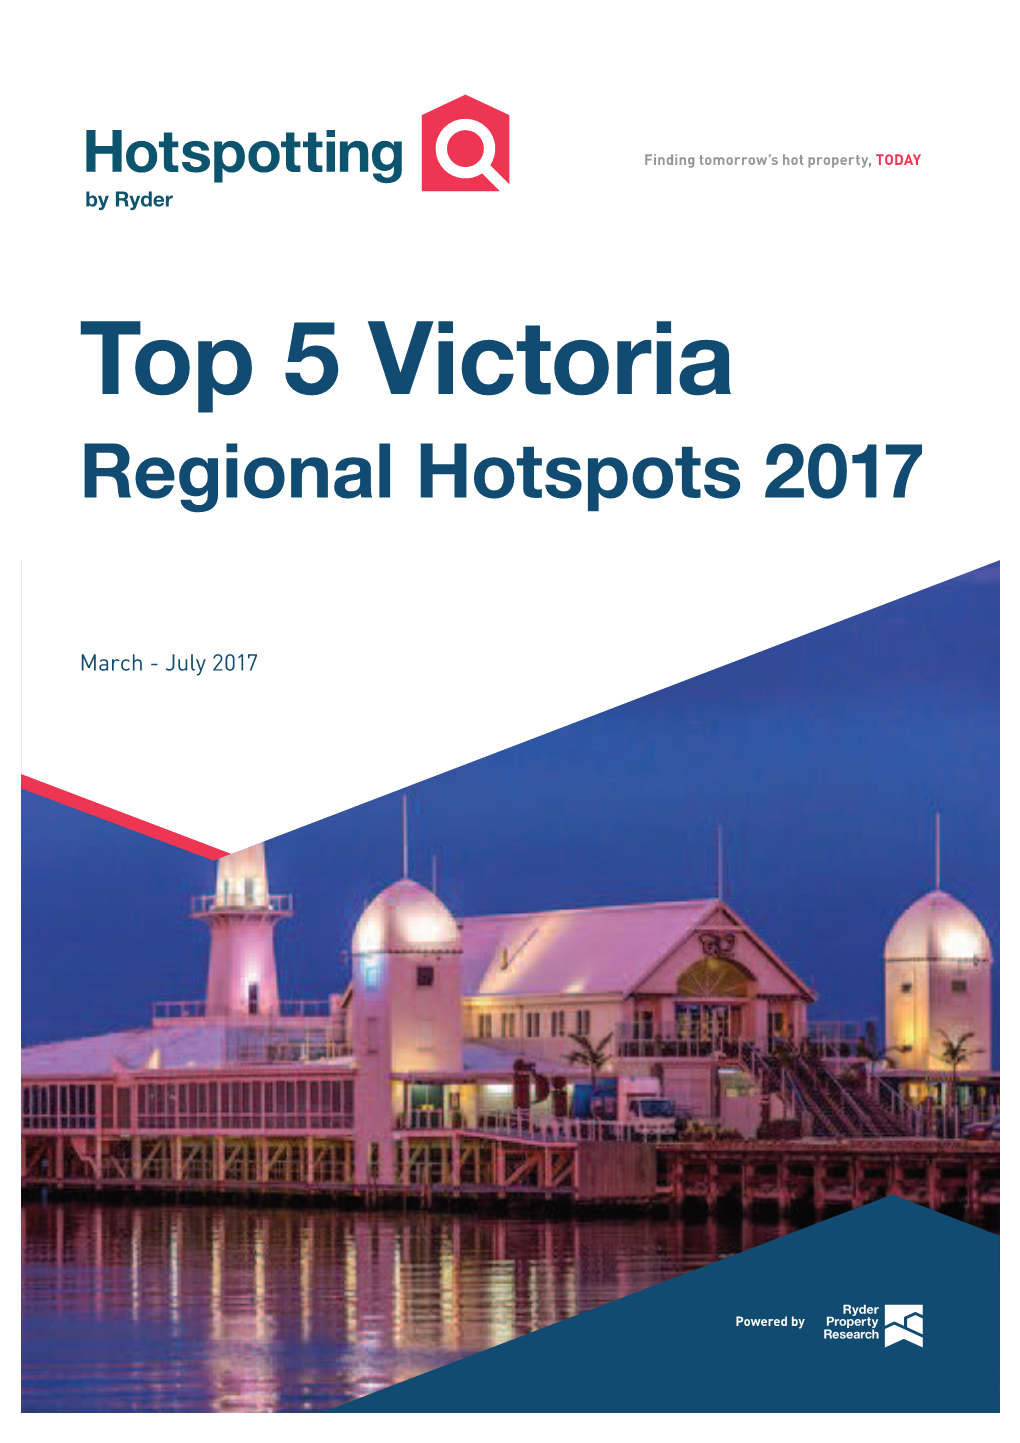 Top 5 Victoria Regional Hotspots 2017